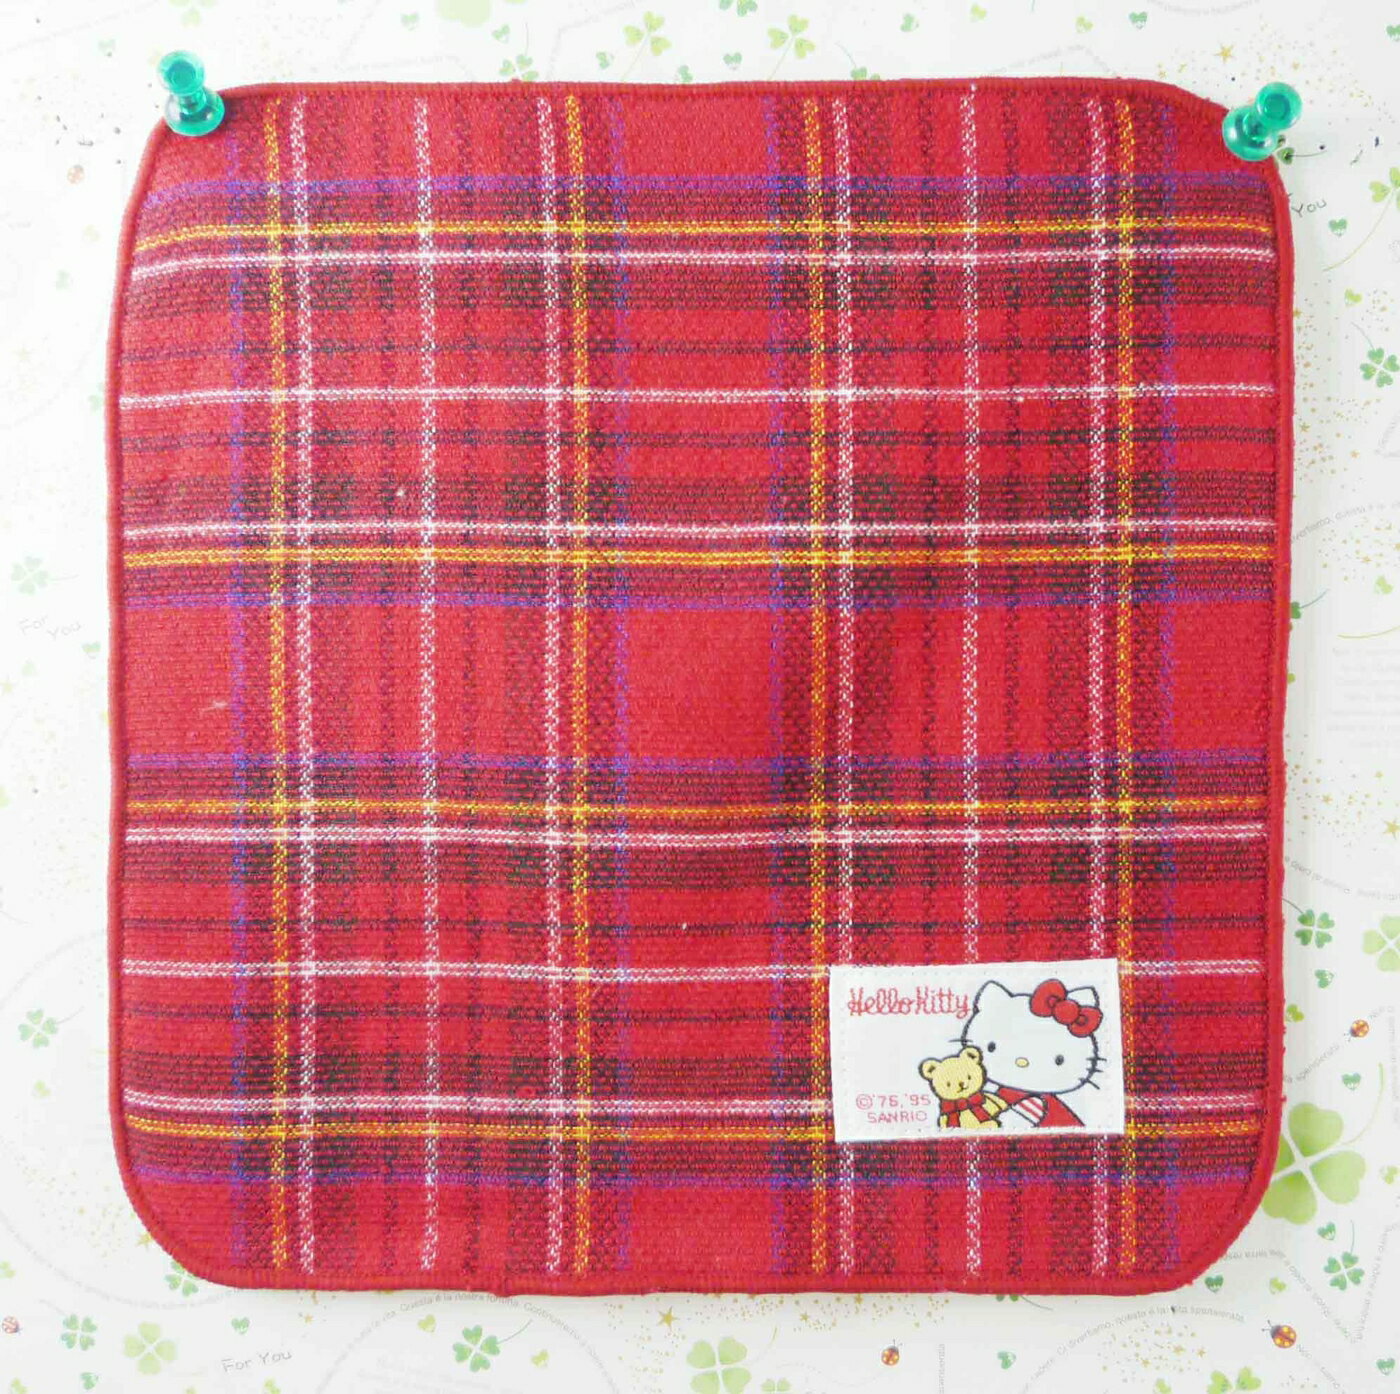 【震撼精品百貨】Hello Kitty 凱蒂貓 方巾-復古紅格 震撼日式精品百貨